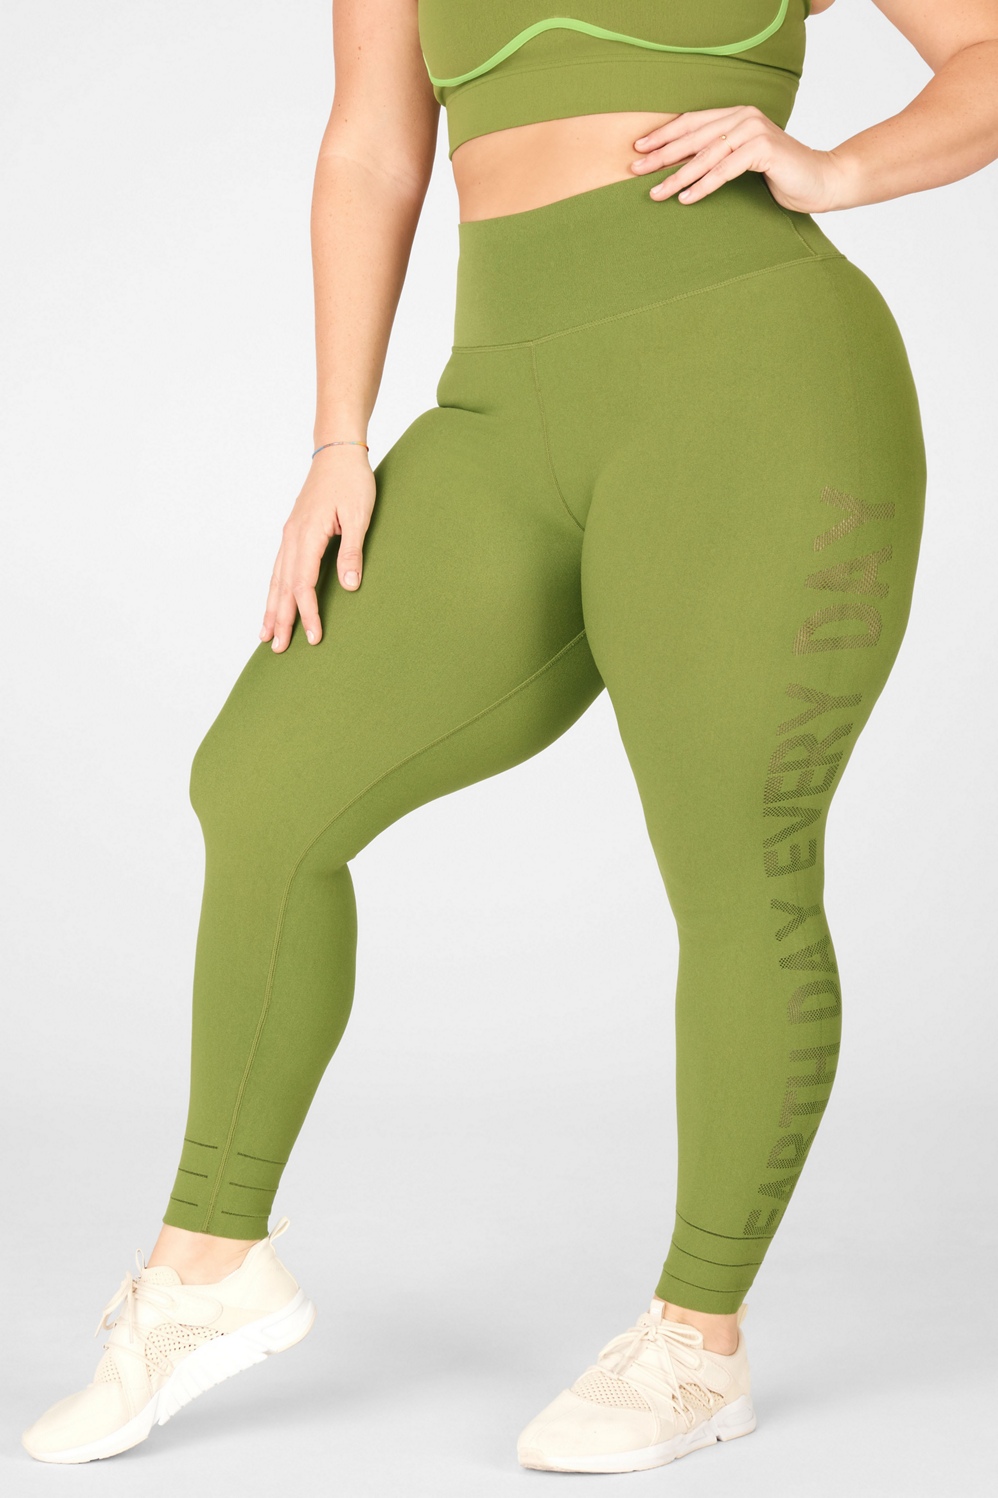 Ethos Women's Olive Green Bra+Legging set Size S - Depop